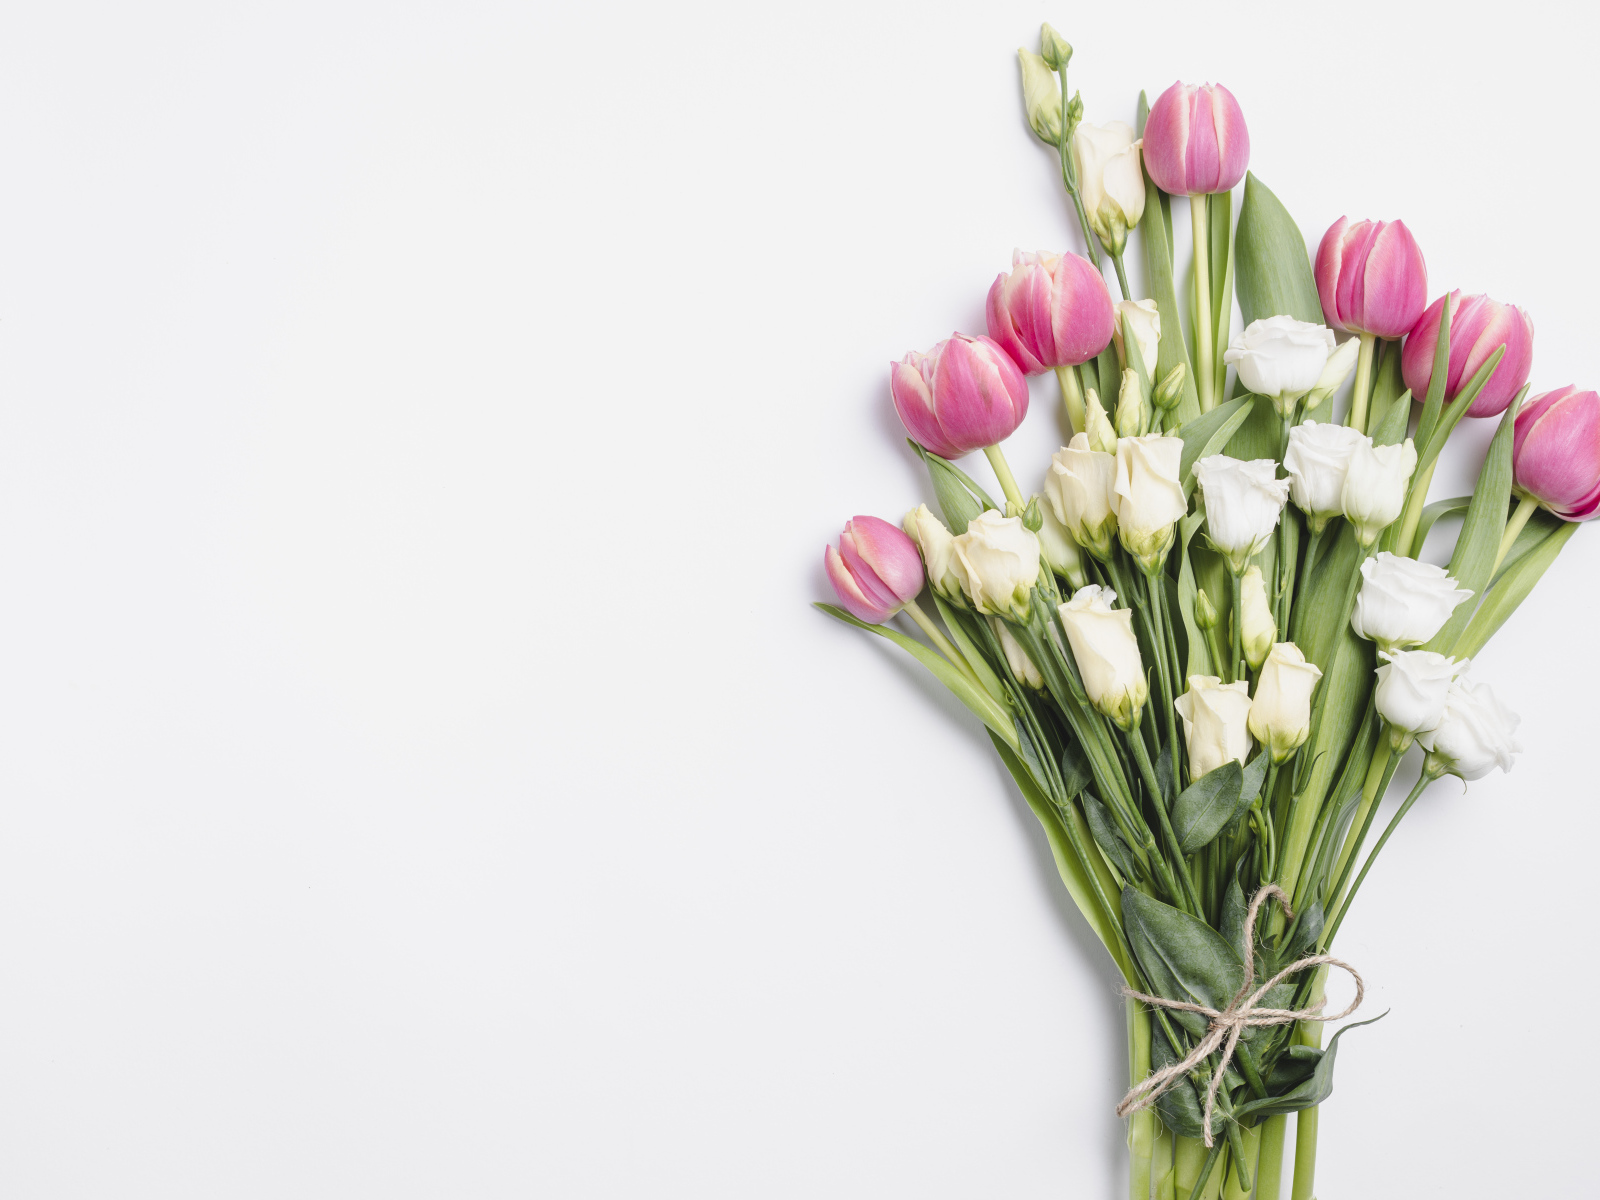 Букет тюльпанов и цветов эустомы на сером фоне, шаблон